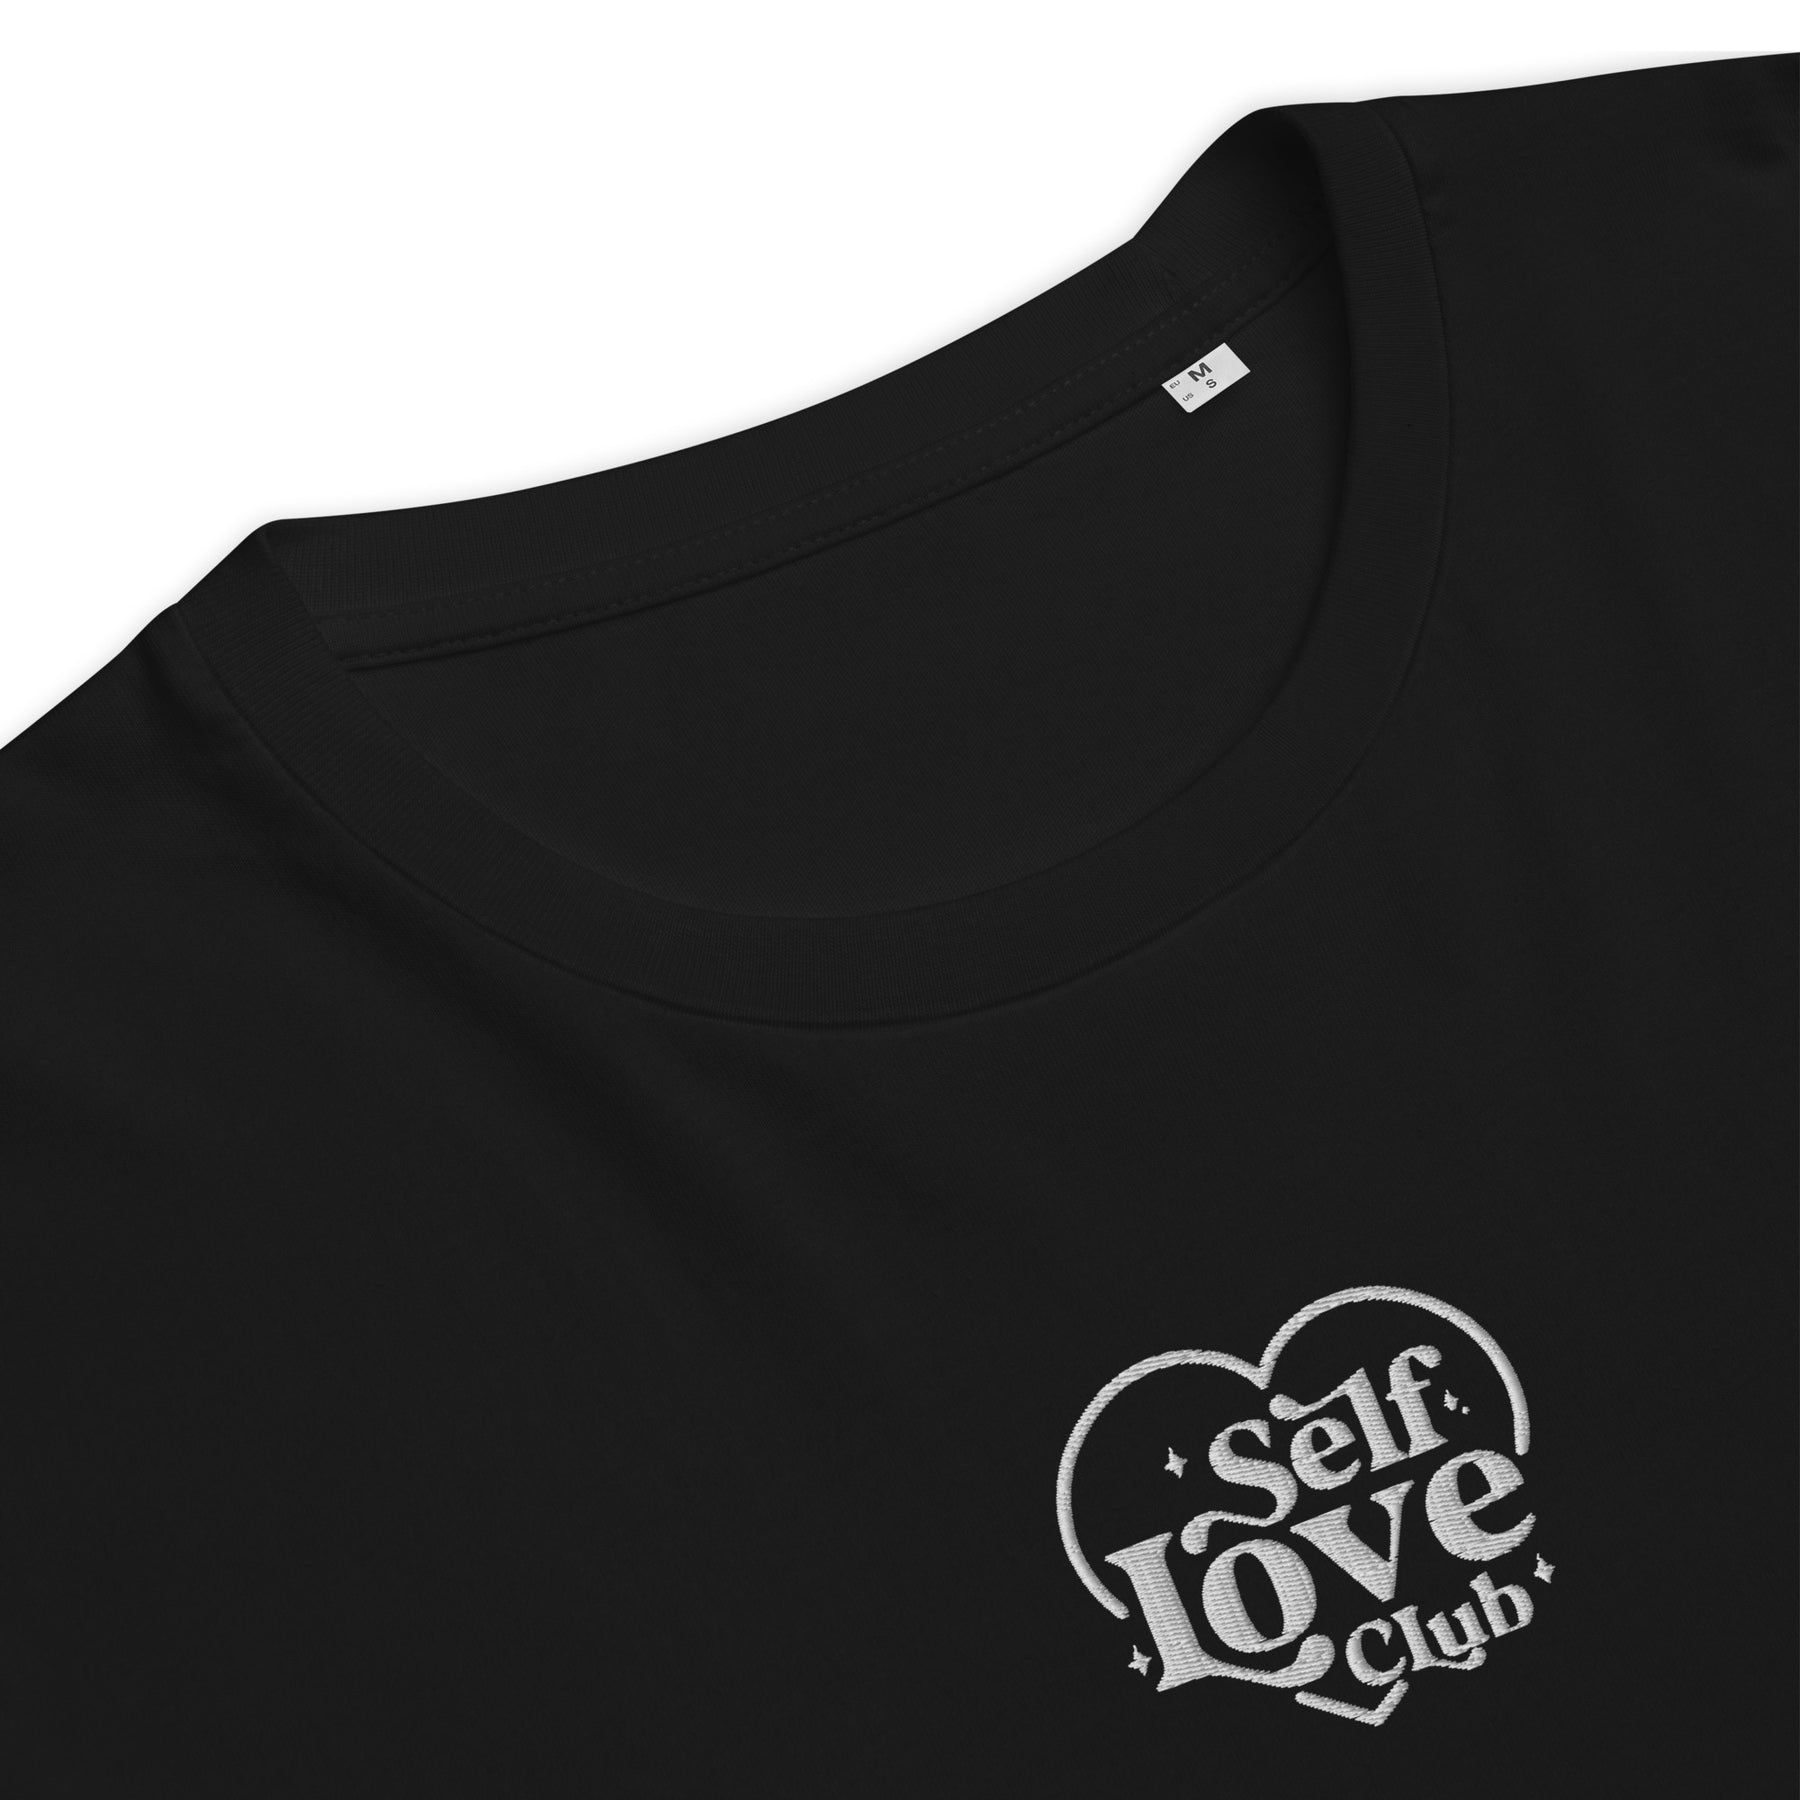 T-shirt | Self Love Club